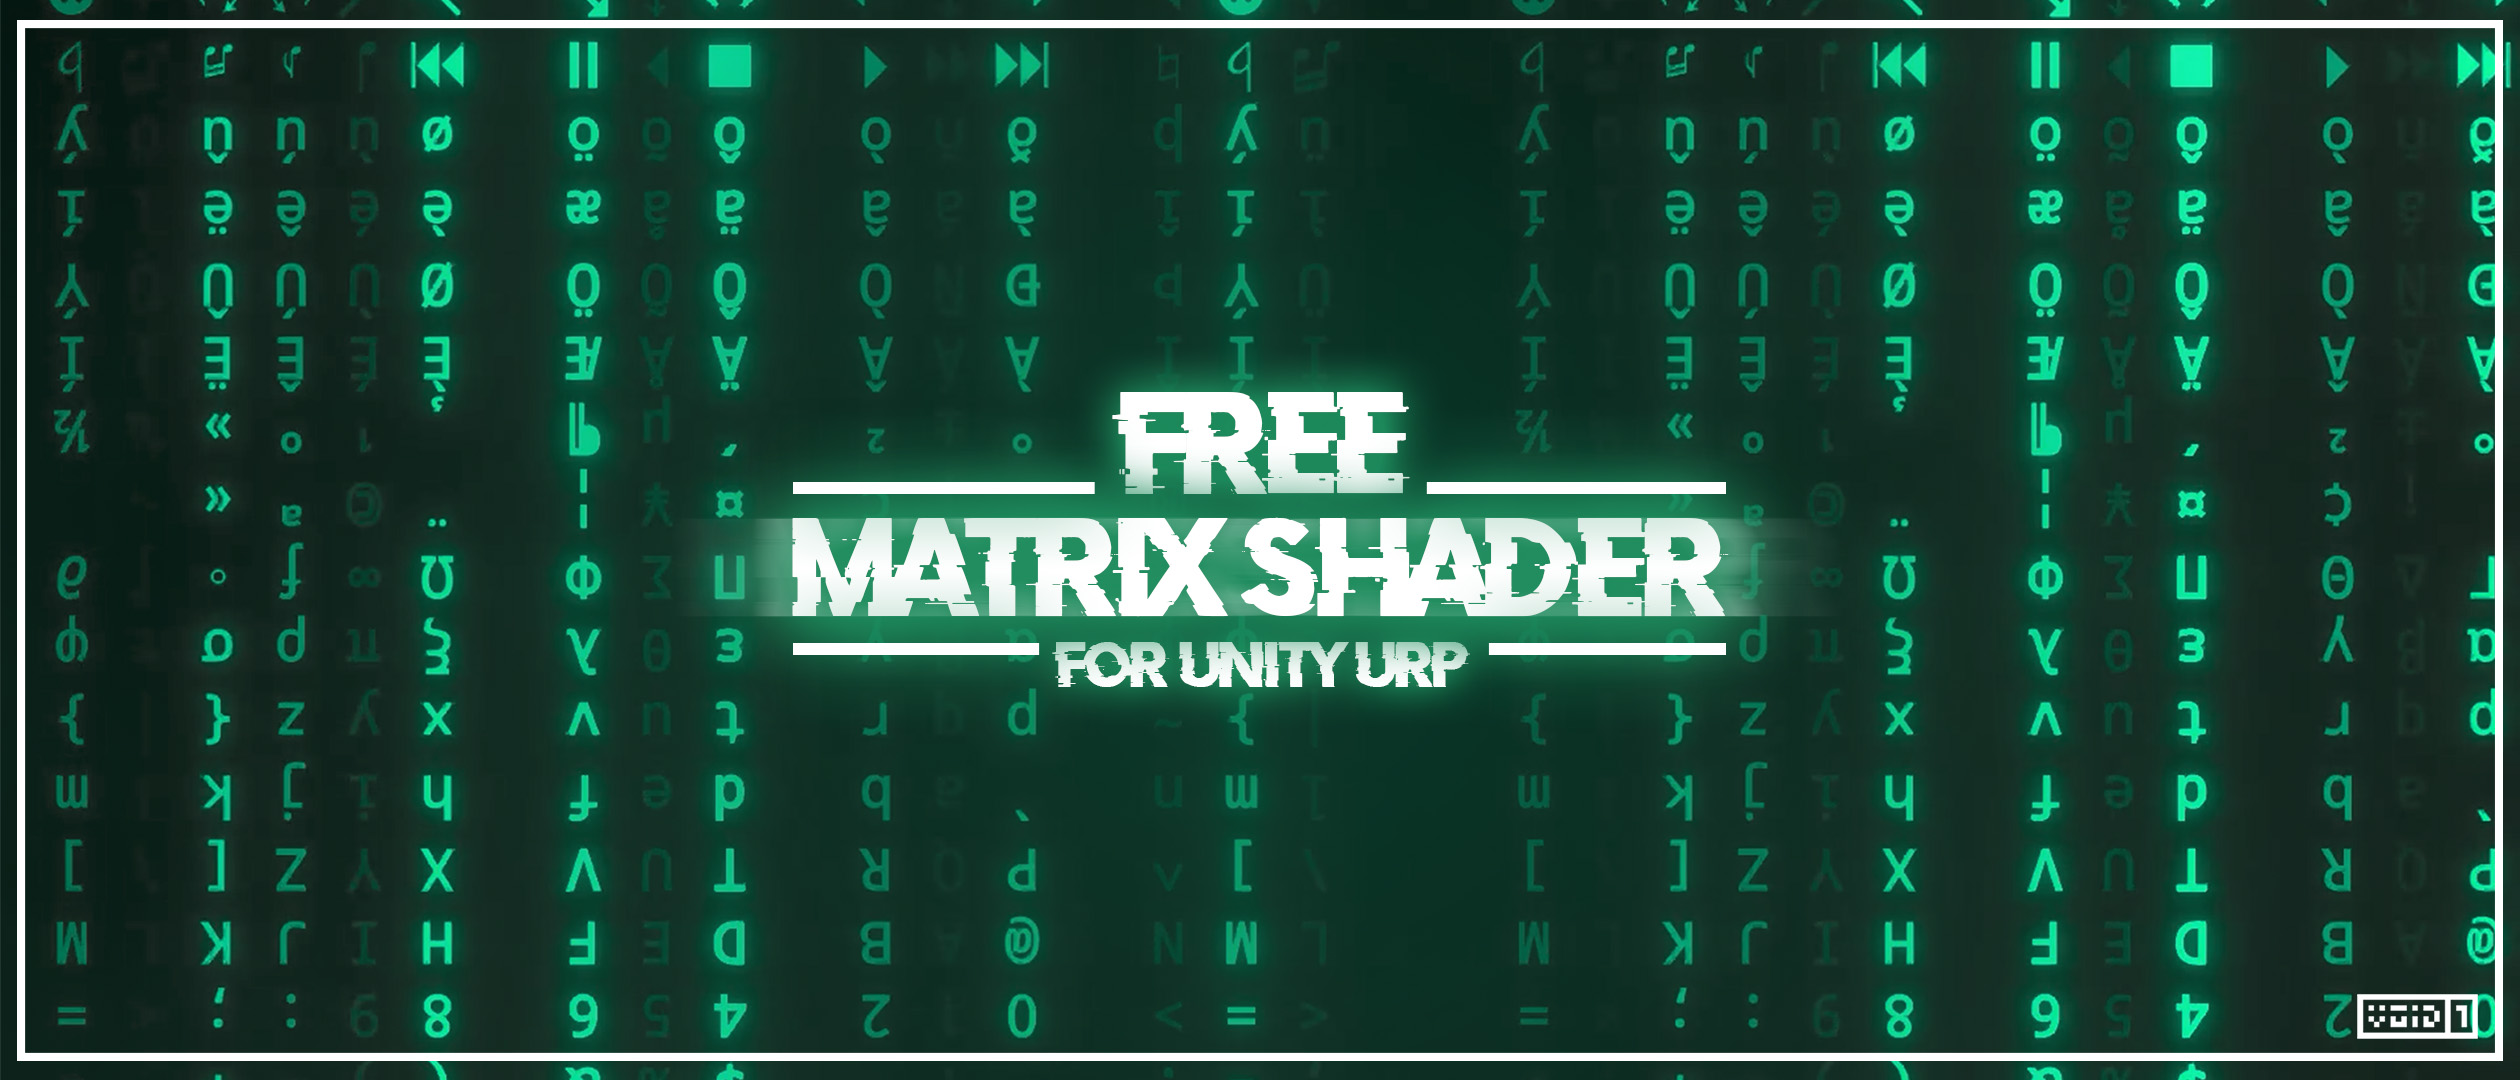 Free Matrix Shader for Unity URP